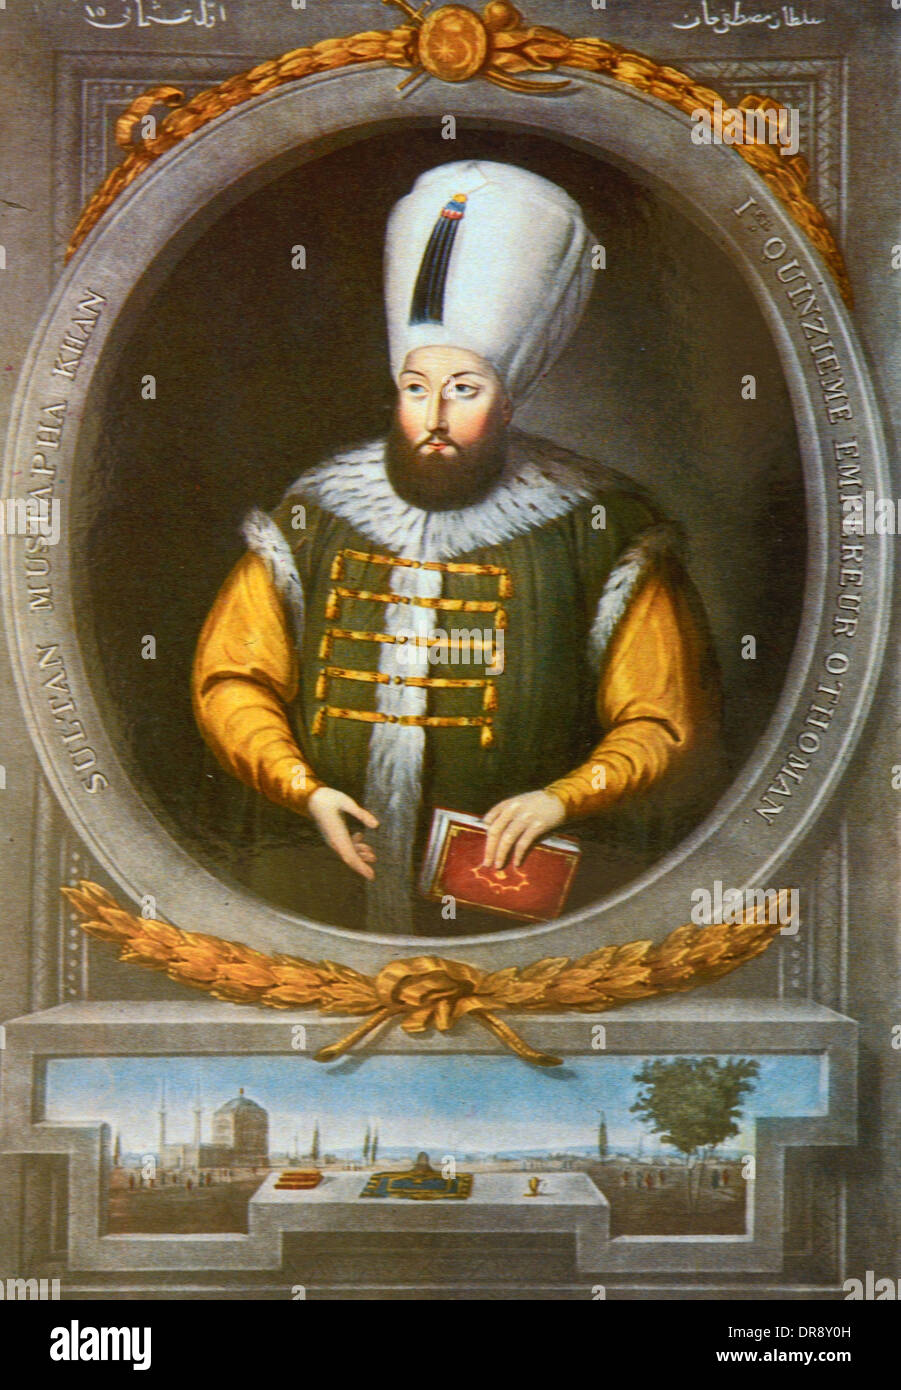 Sultan ottoman turc Mustafa I (1591-1639) Portrait Peinture avec Turban jugé Turquie Banque D'Images